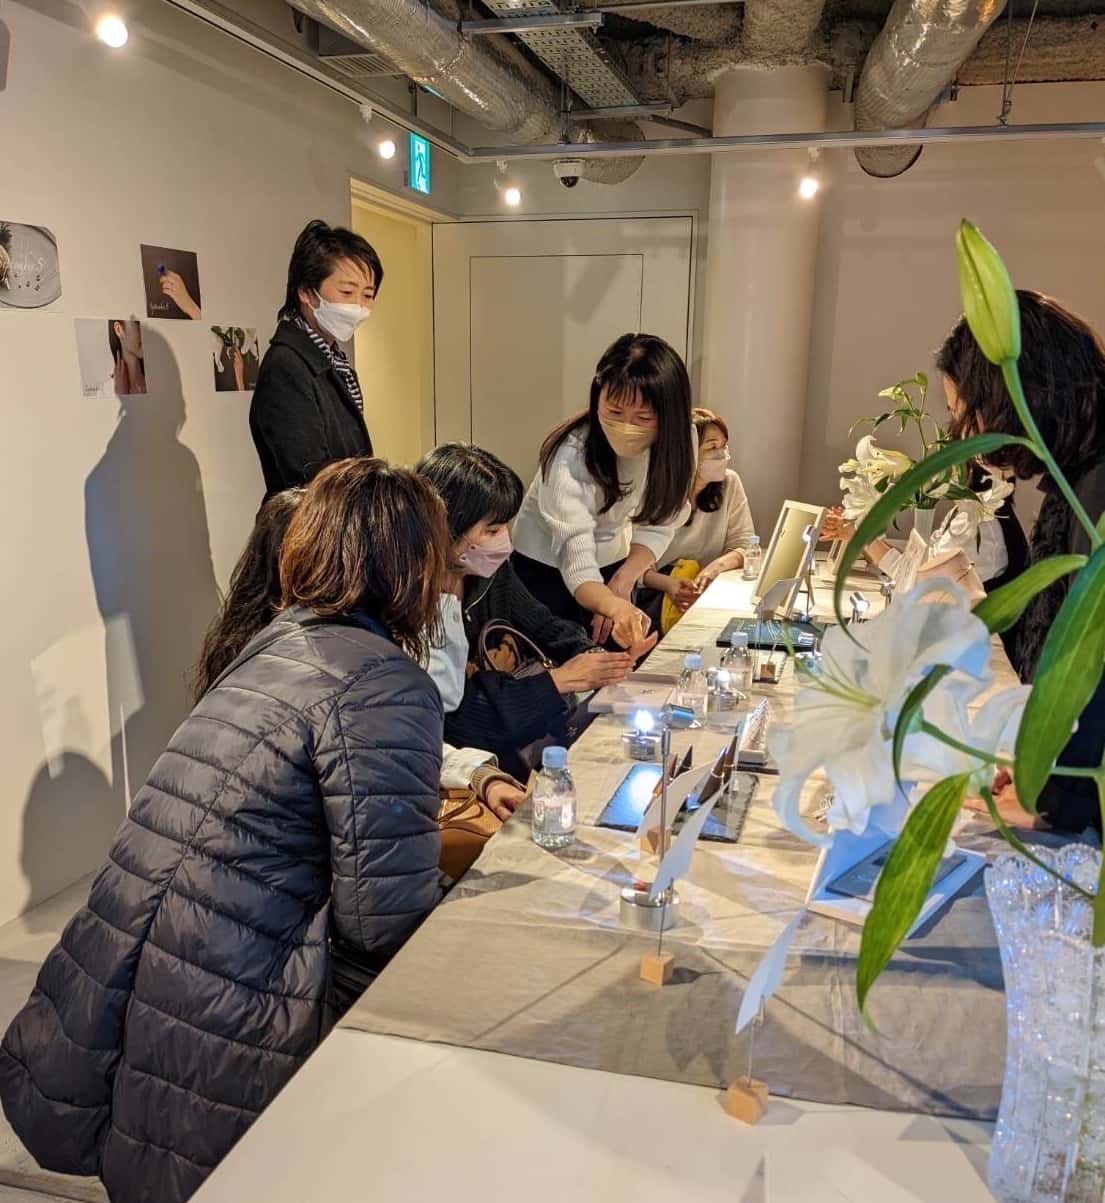 ラボグロウンダイヤモンド専門店『september5』の2022年3月26日東京下北沢tefe studioにて行われたポップアップショップの様子。